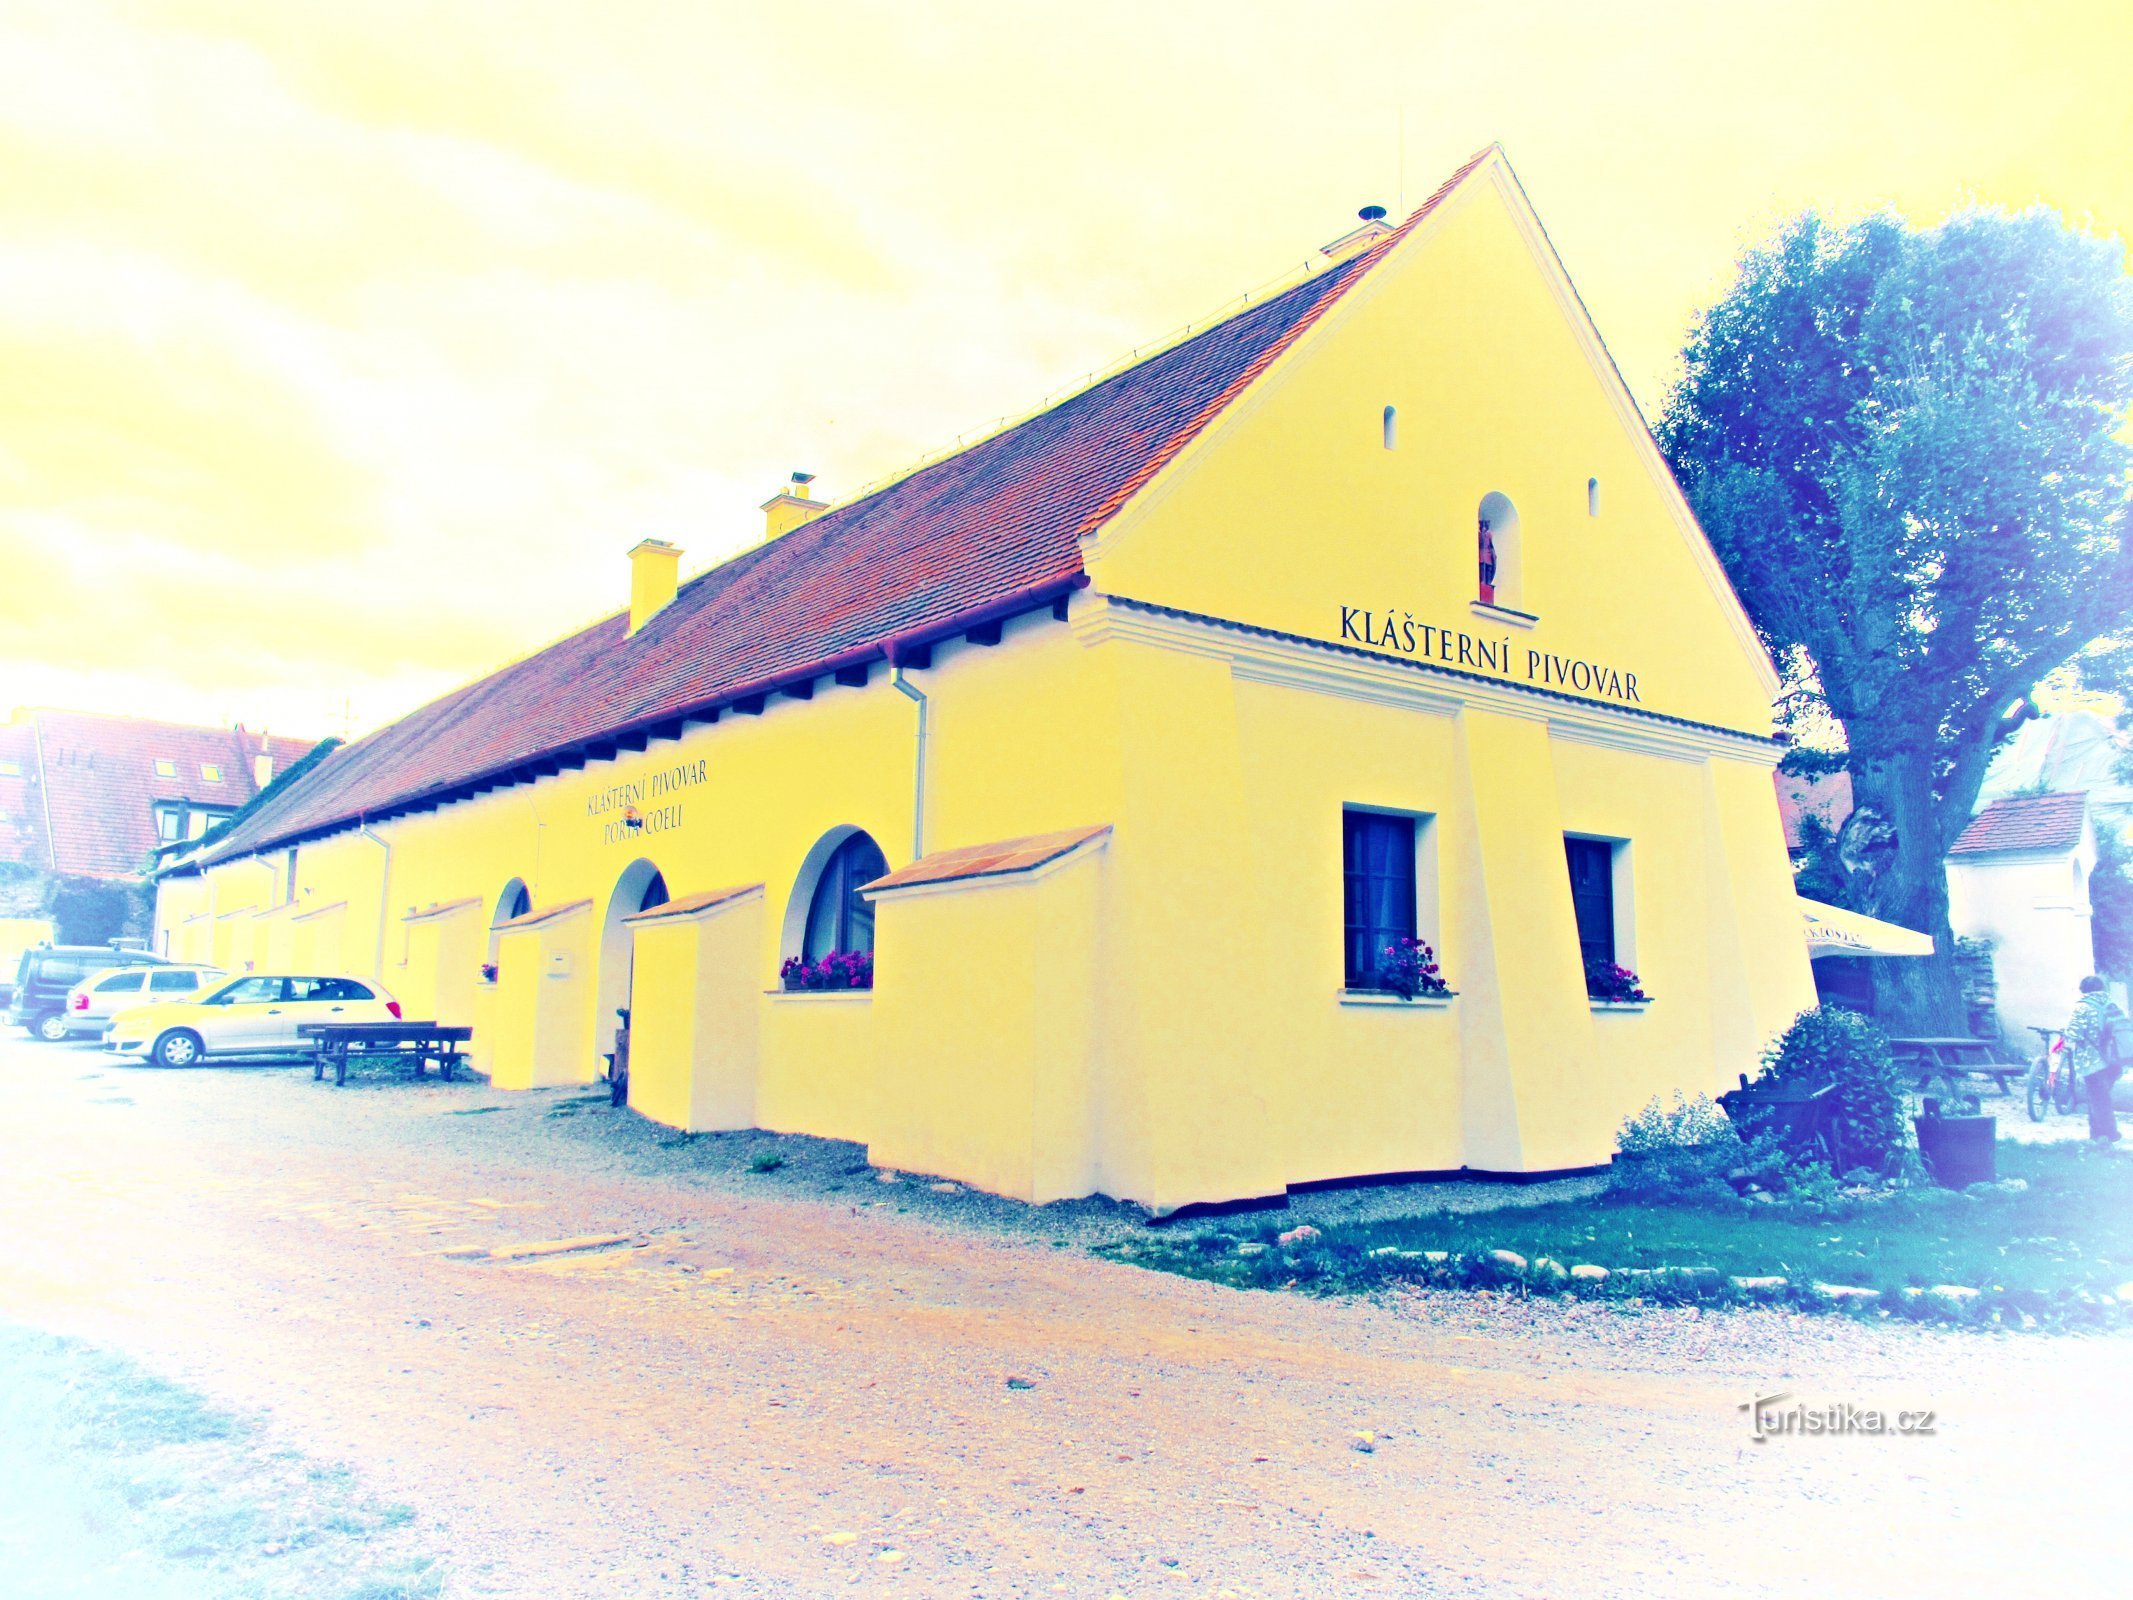 A small family brewery in Předklášteří near Tišnov